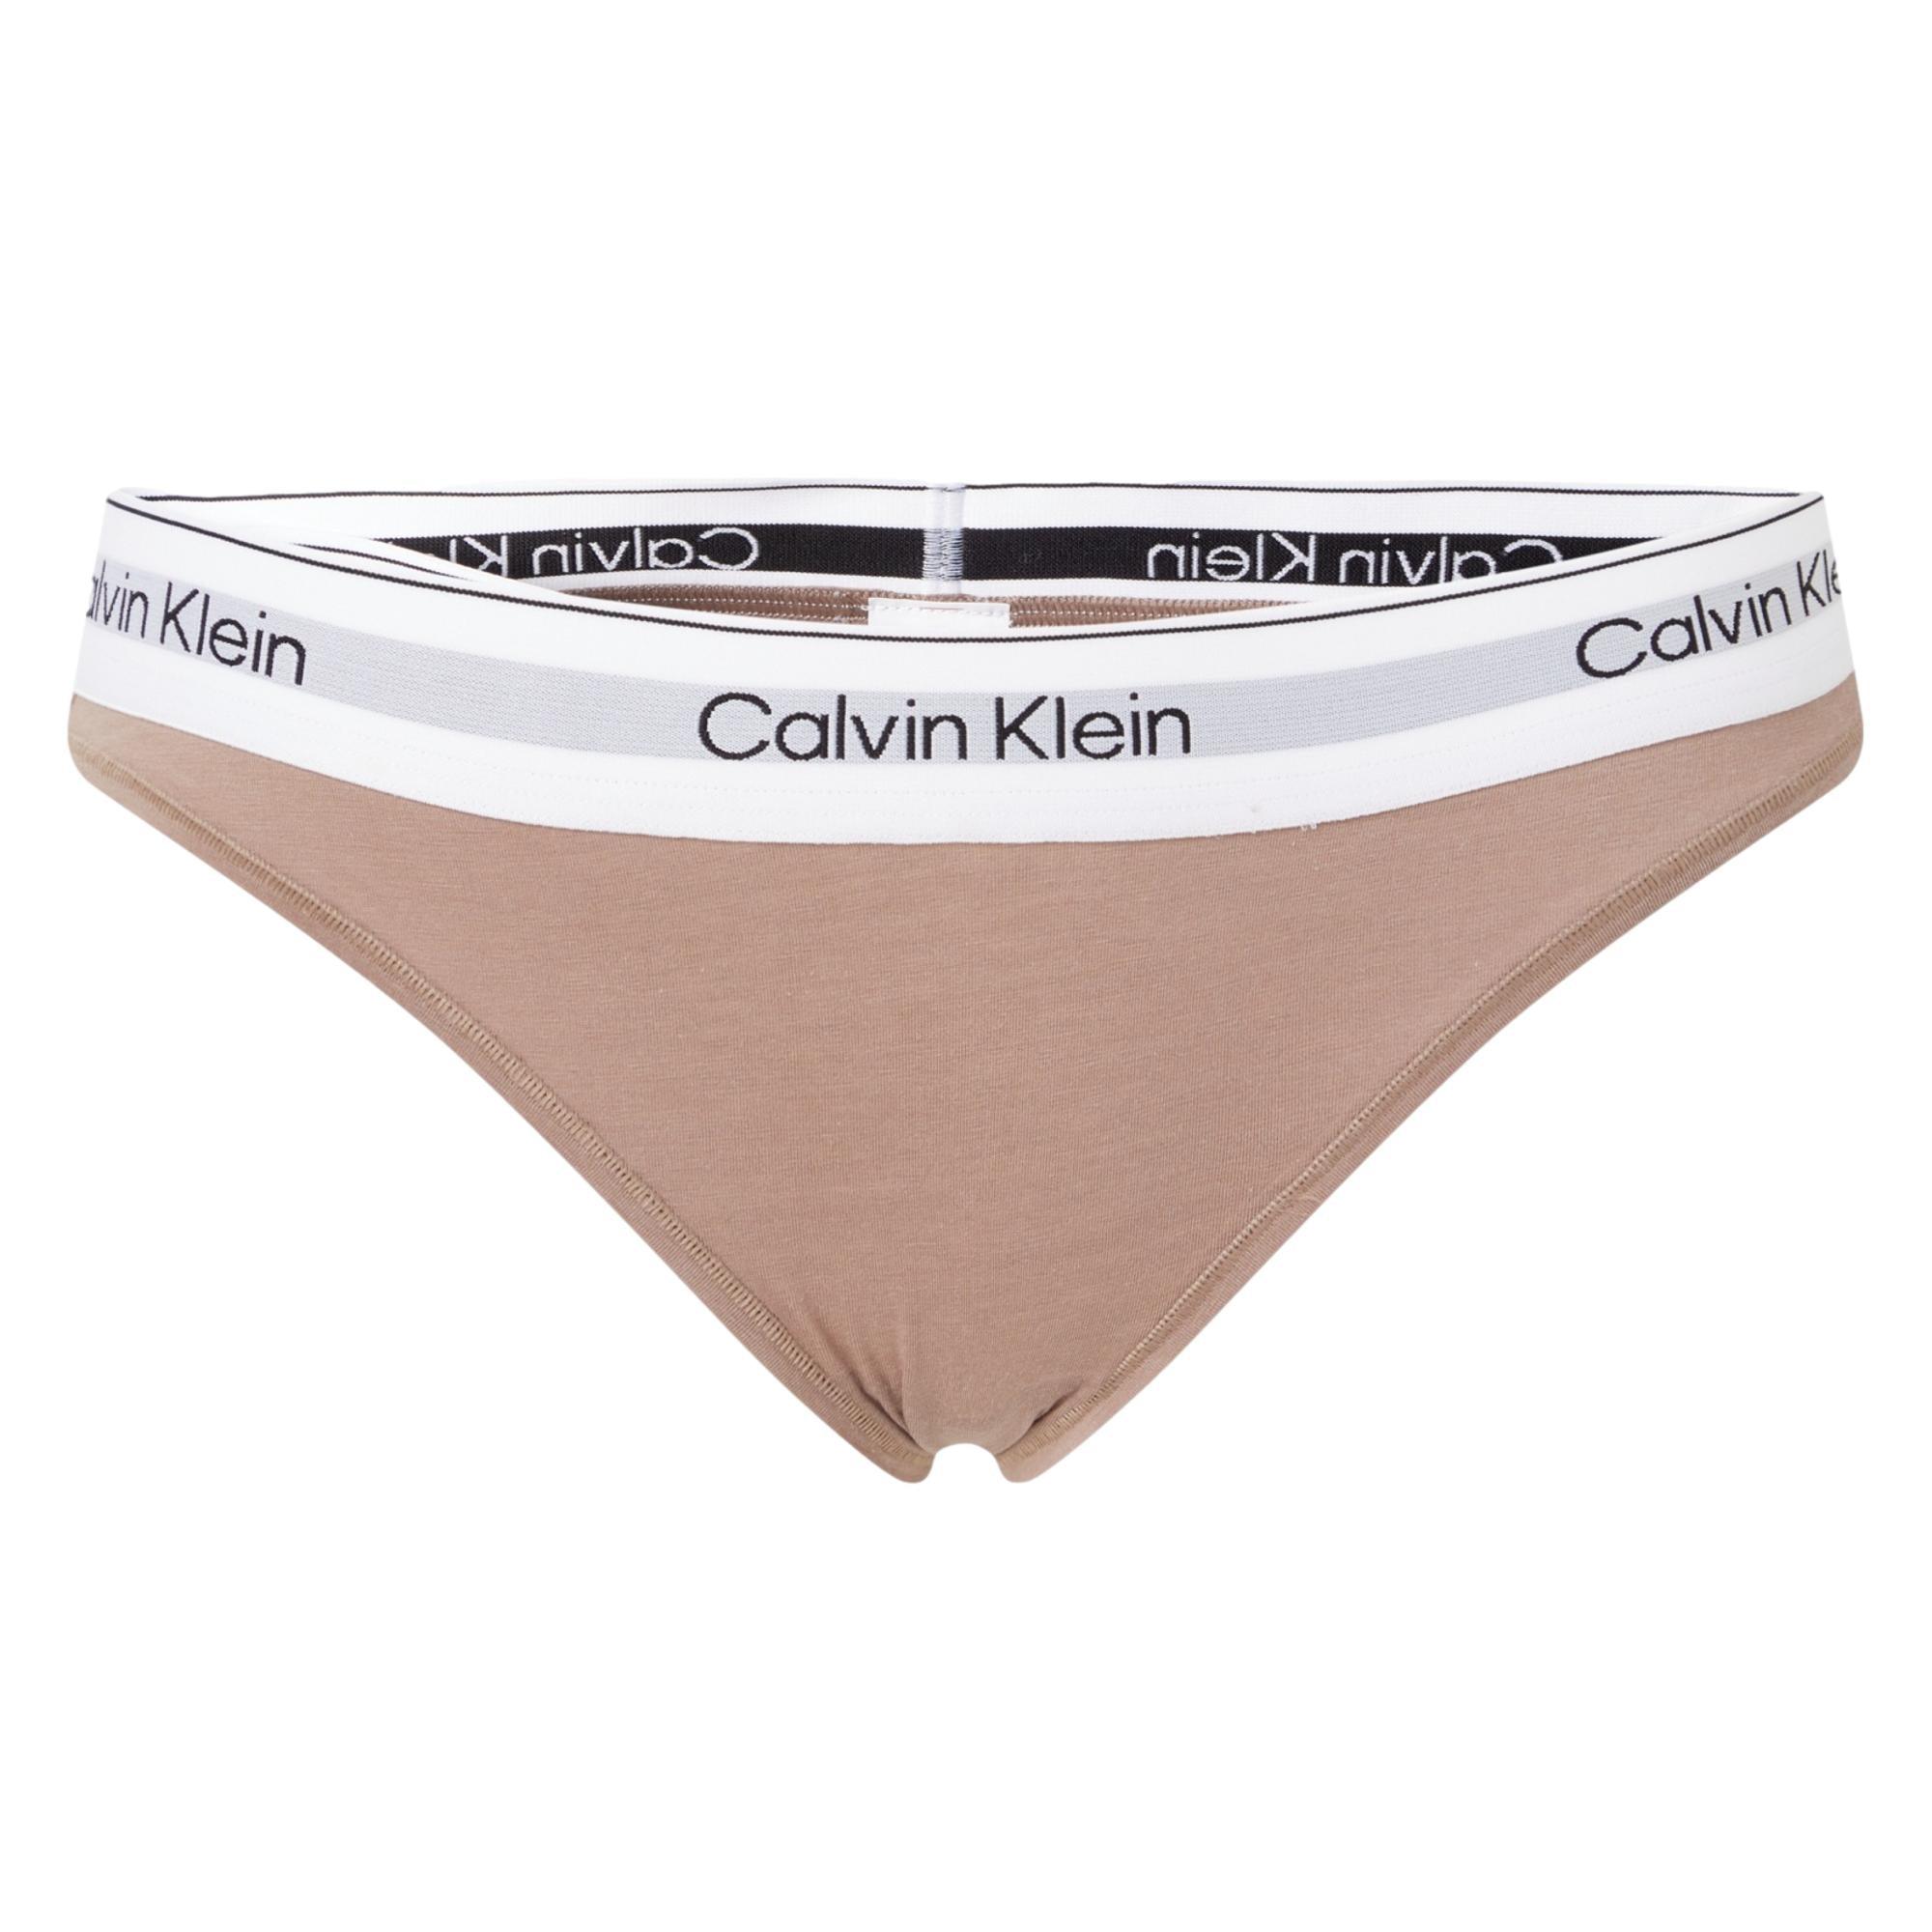  Calvin Klein Underwear Women's Modern Cotton Naturals